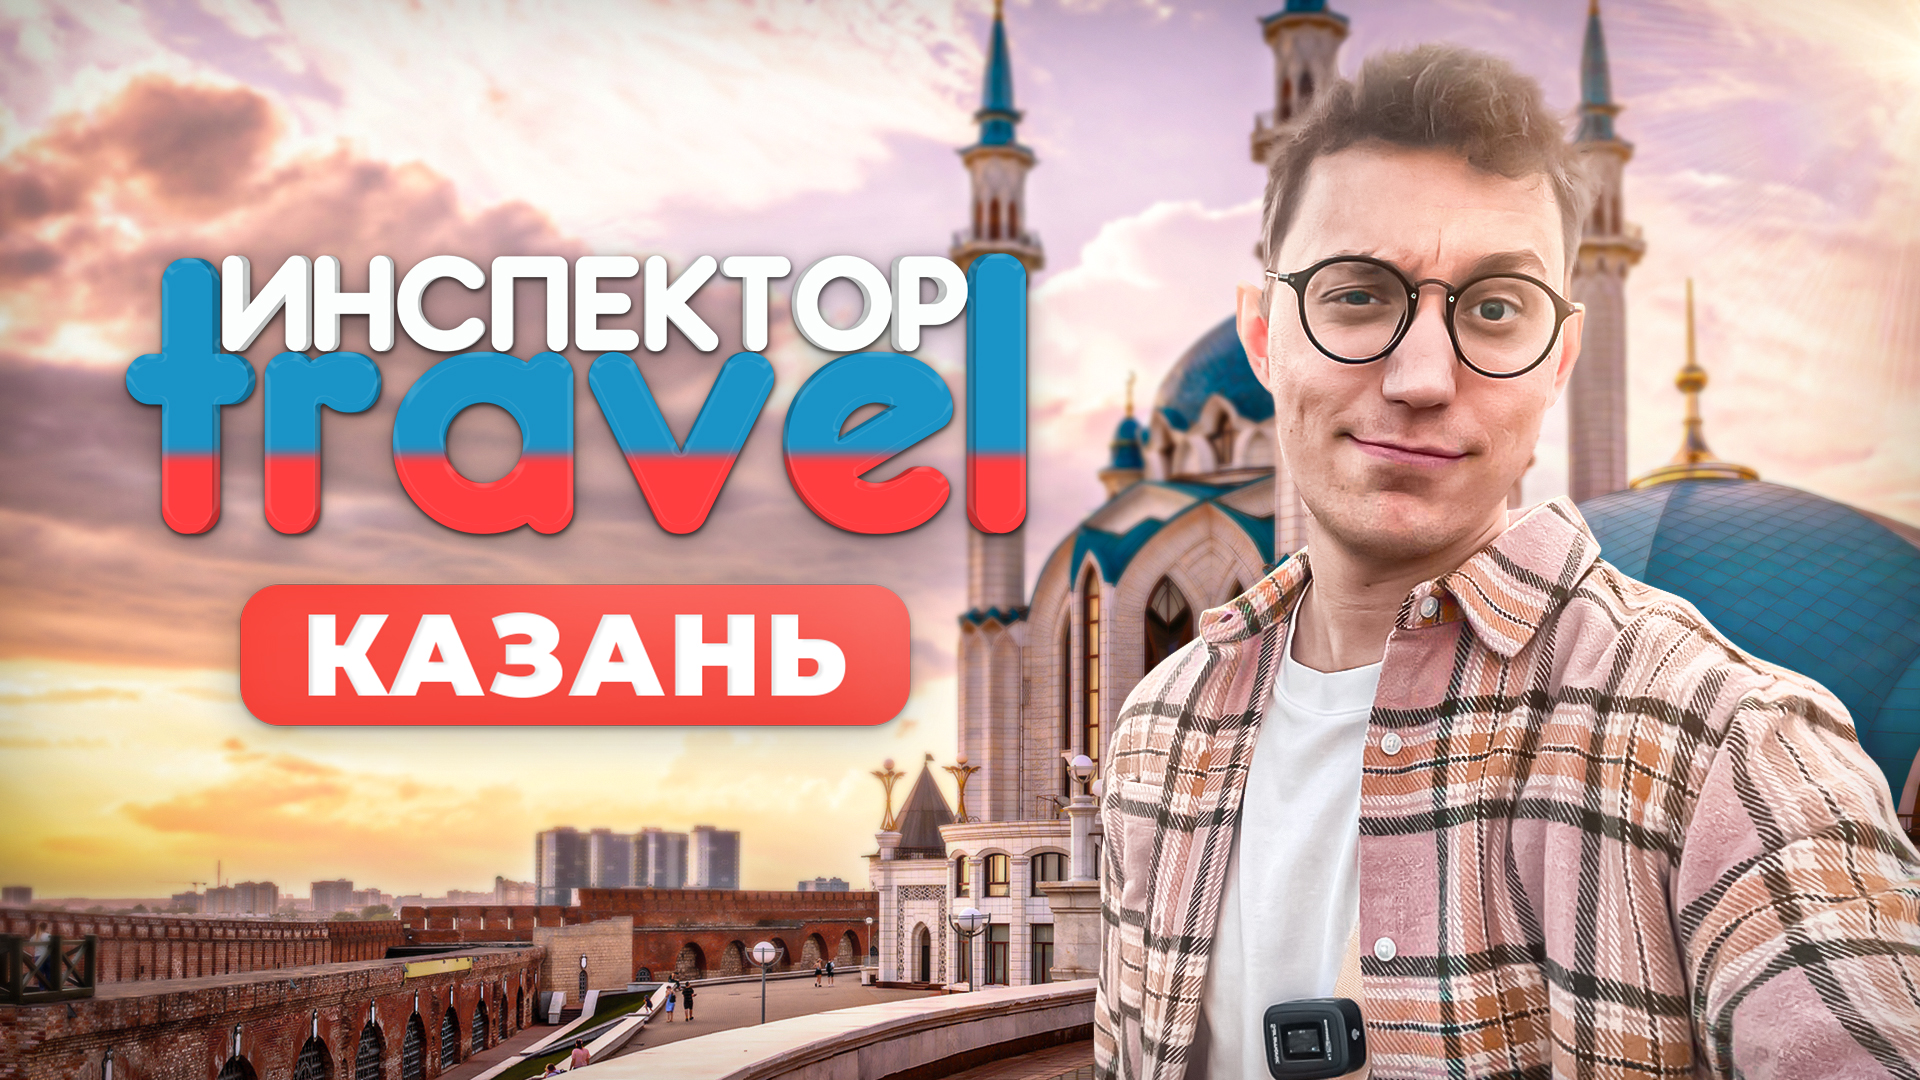 24 часа в Казани: кыстыбай, чак-чак, эчпочмак и насыщенный маршрут по городу / Инспектор travel